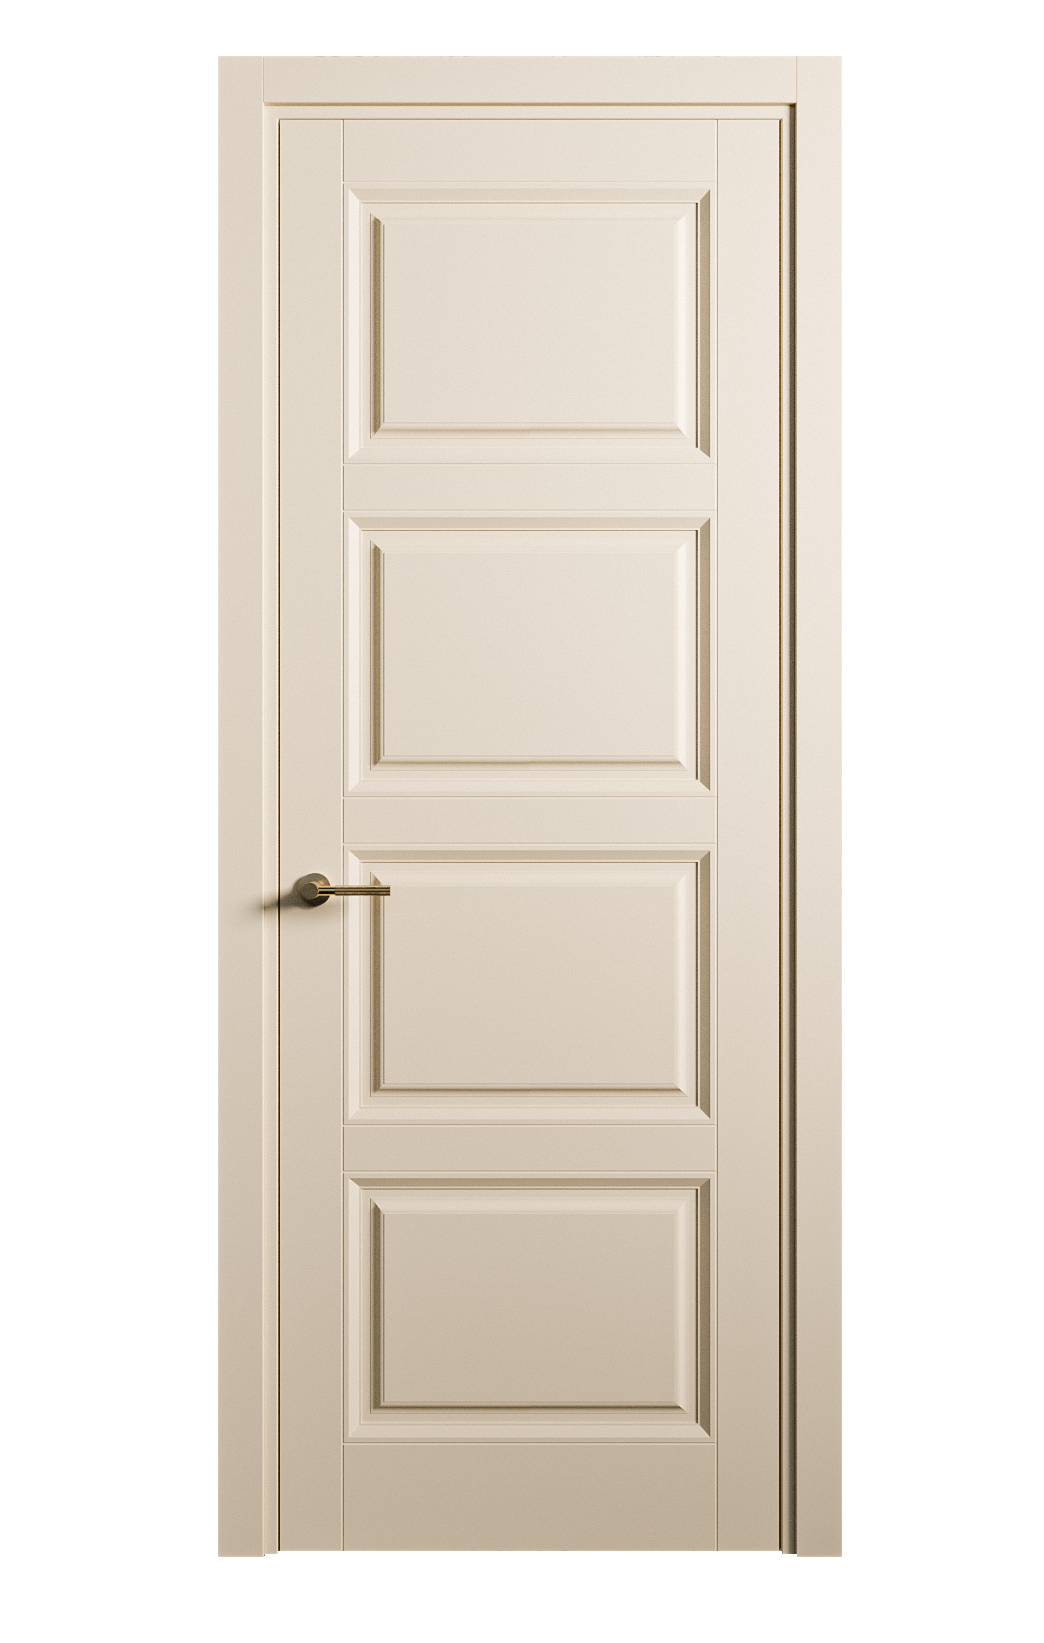 Межкомнатная дверь Venezia-4 глухая эмаль ral 1015 25843